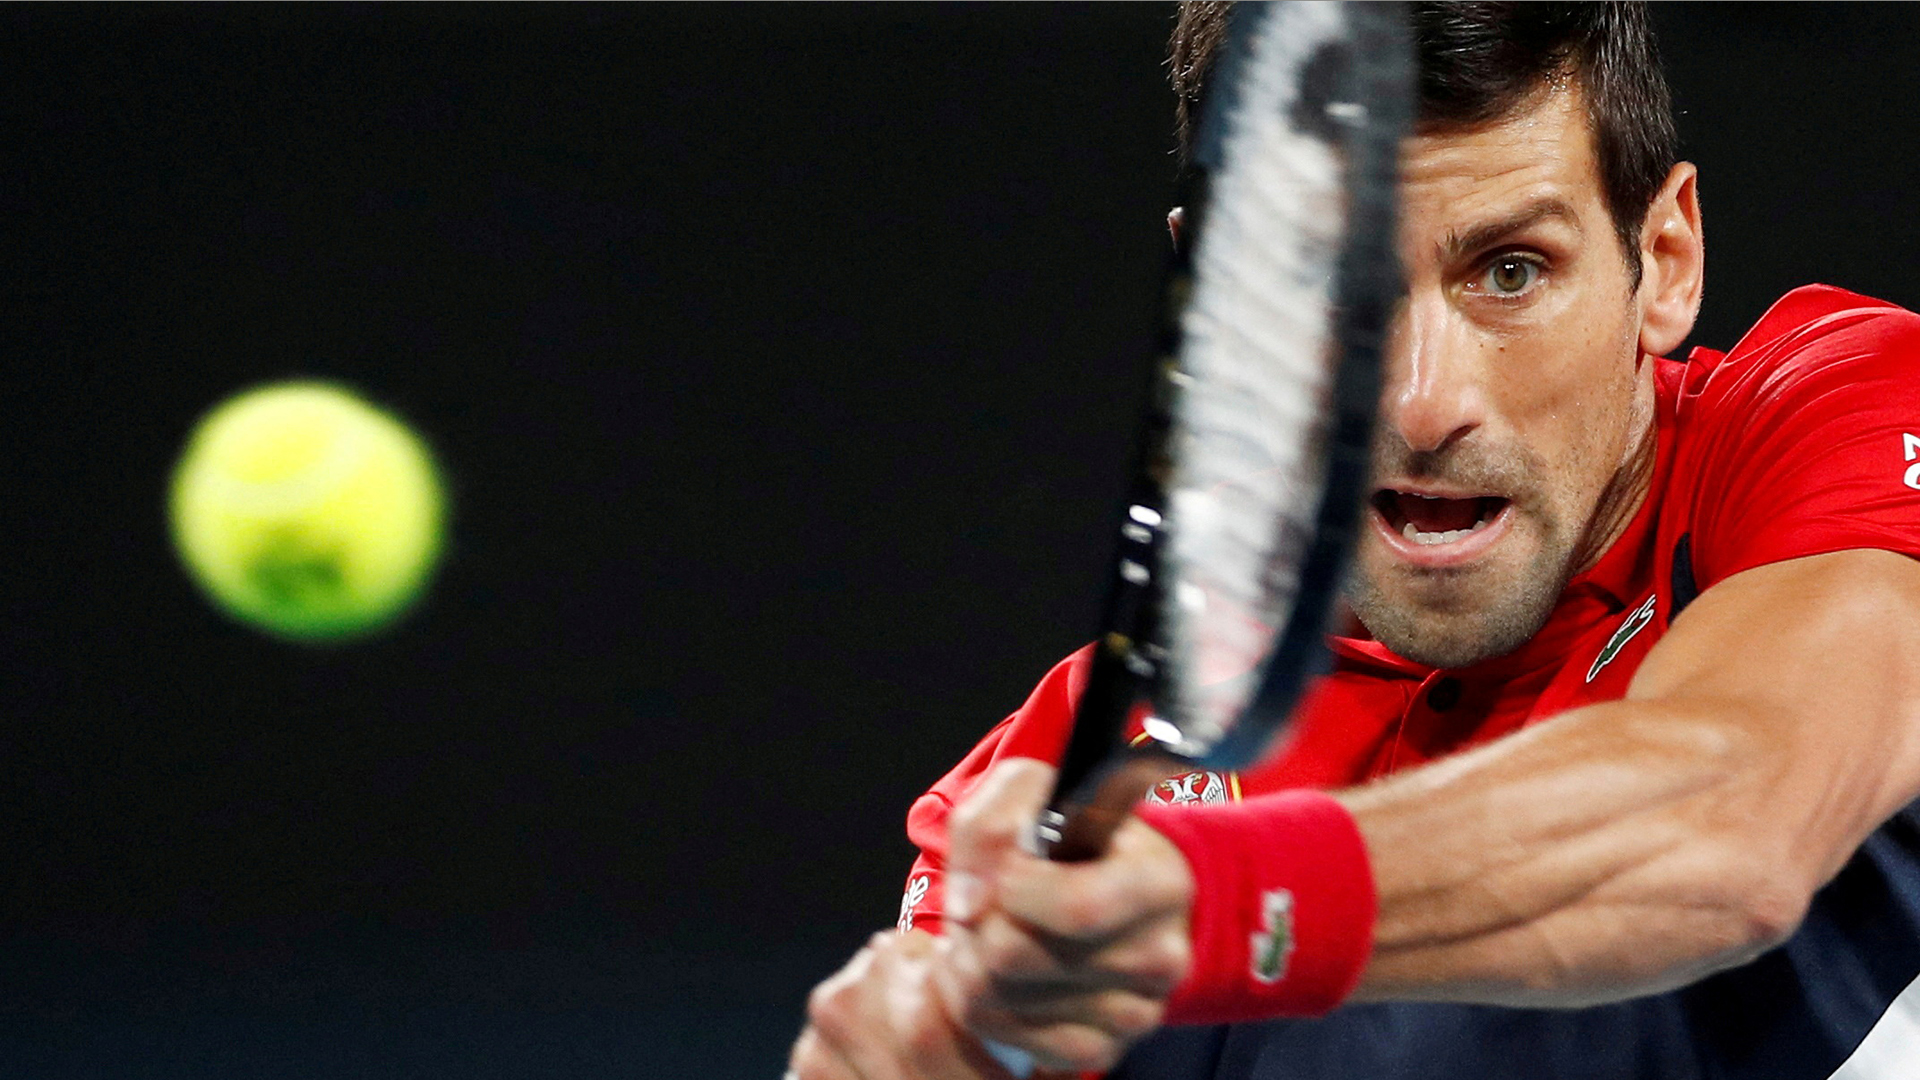 Tennisstar Djokovic äußert sich erstmals zu Vorwürfen